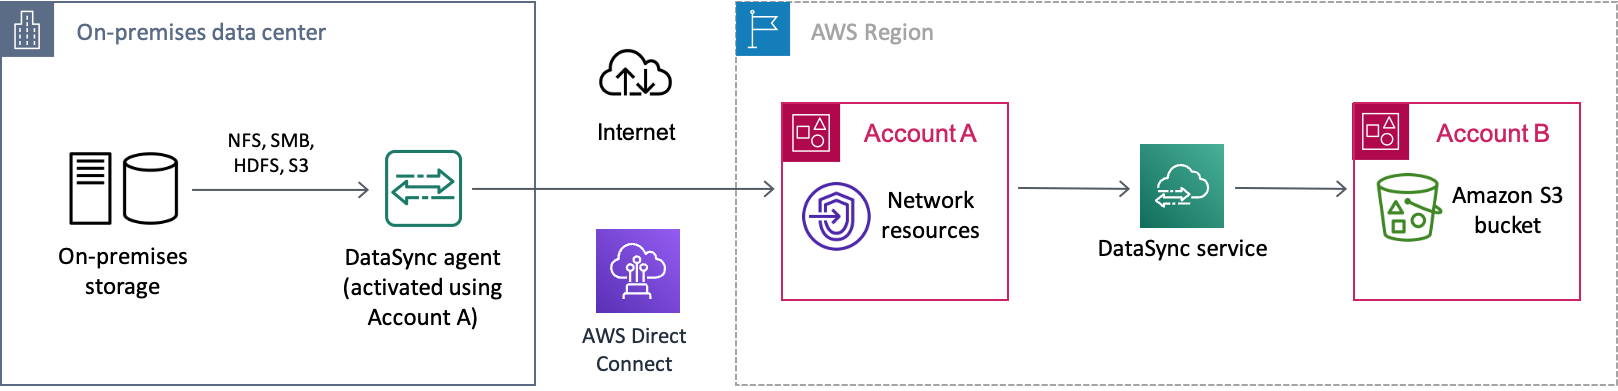 온프레미스 스토리지 시스템에서 인터넷을 통해 데이터가 이동하는 예제DataSyncAWS 시나리오입니다. 데이터는 먼저 하나AWS 계정 (계정 A) 로 전송된 후 최종적으로 다른AWS 계정 (계정 B) 의 Amazon S3 버킷으로 전송됩니다.